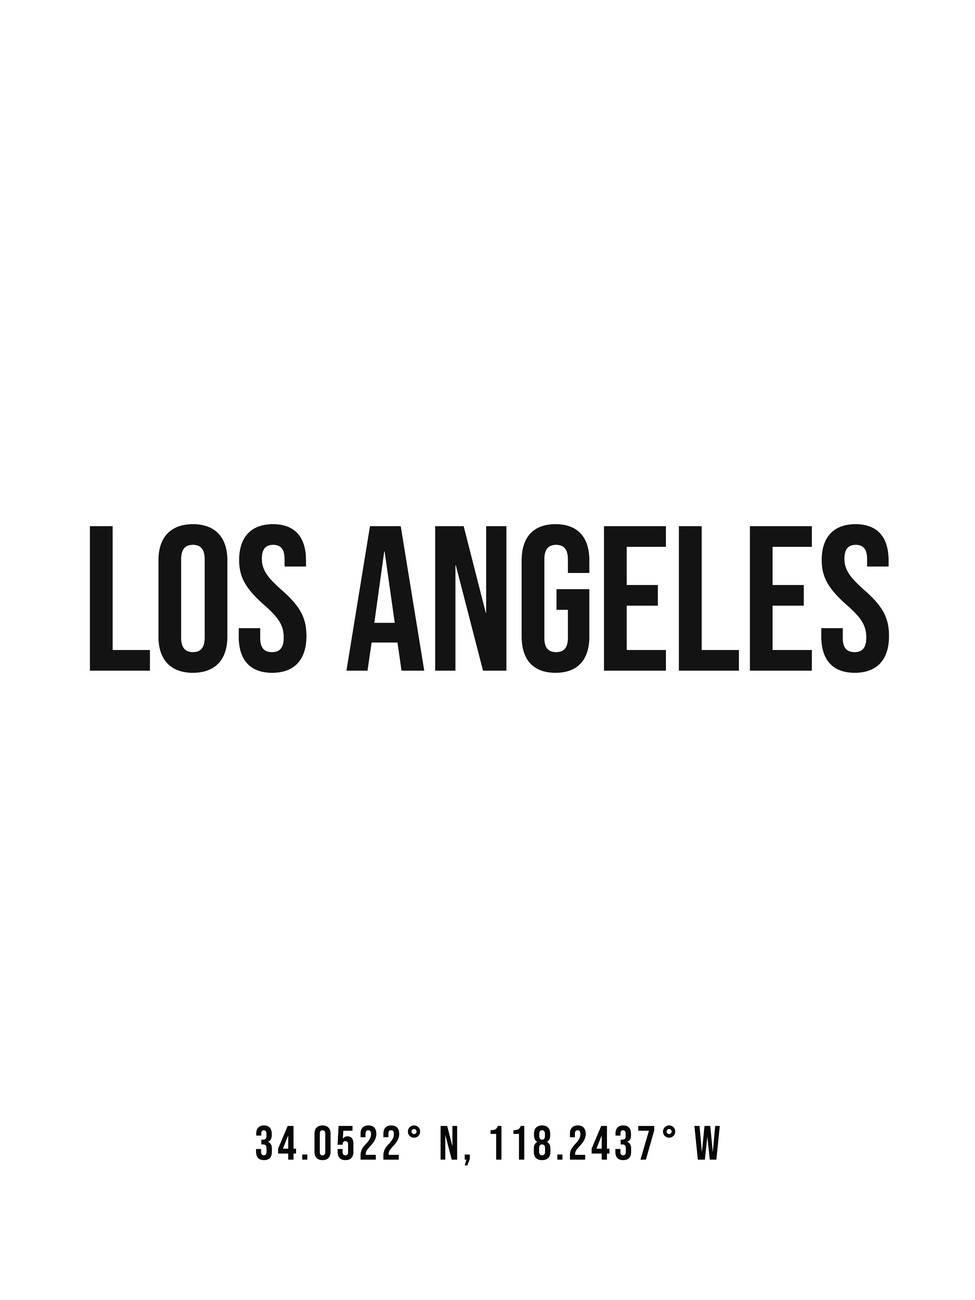 Illustration Los Angeles simple coordinates